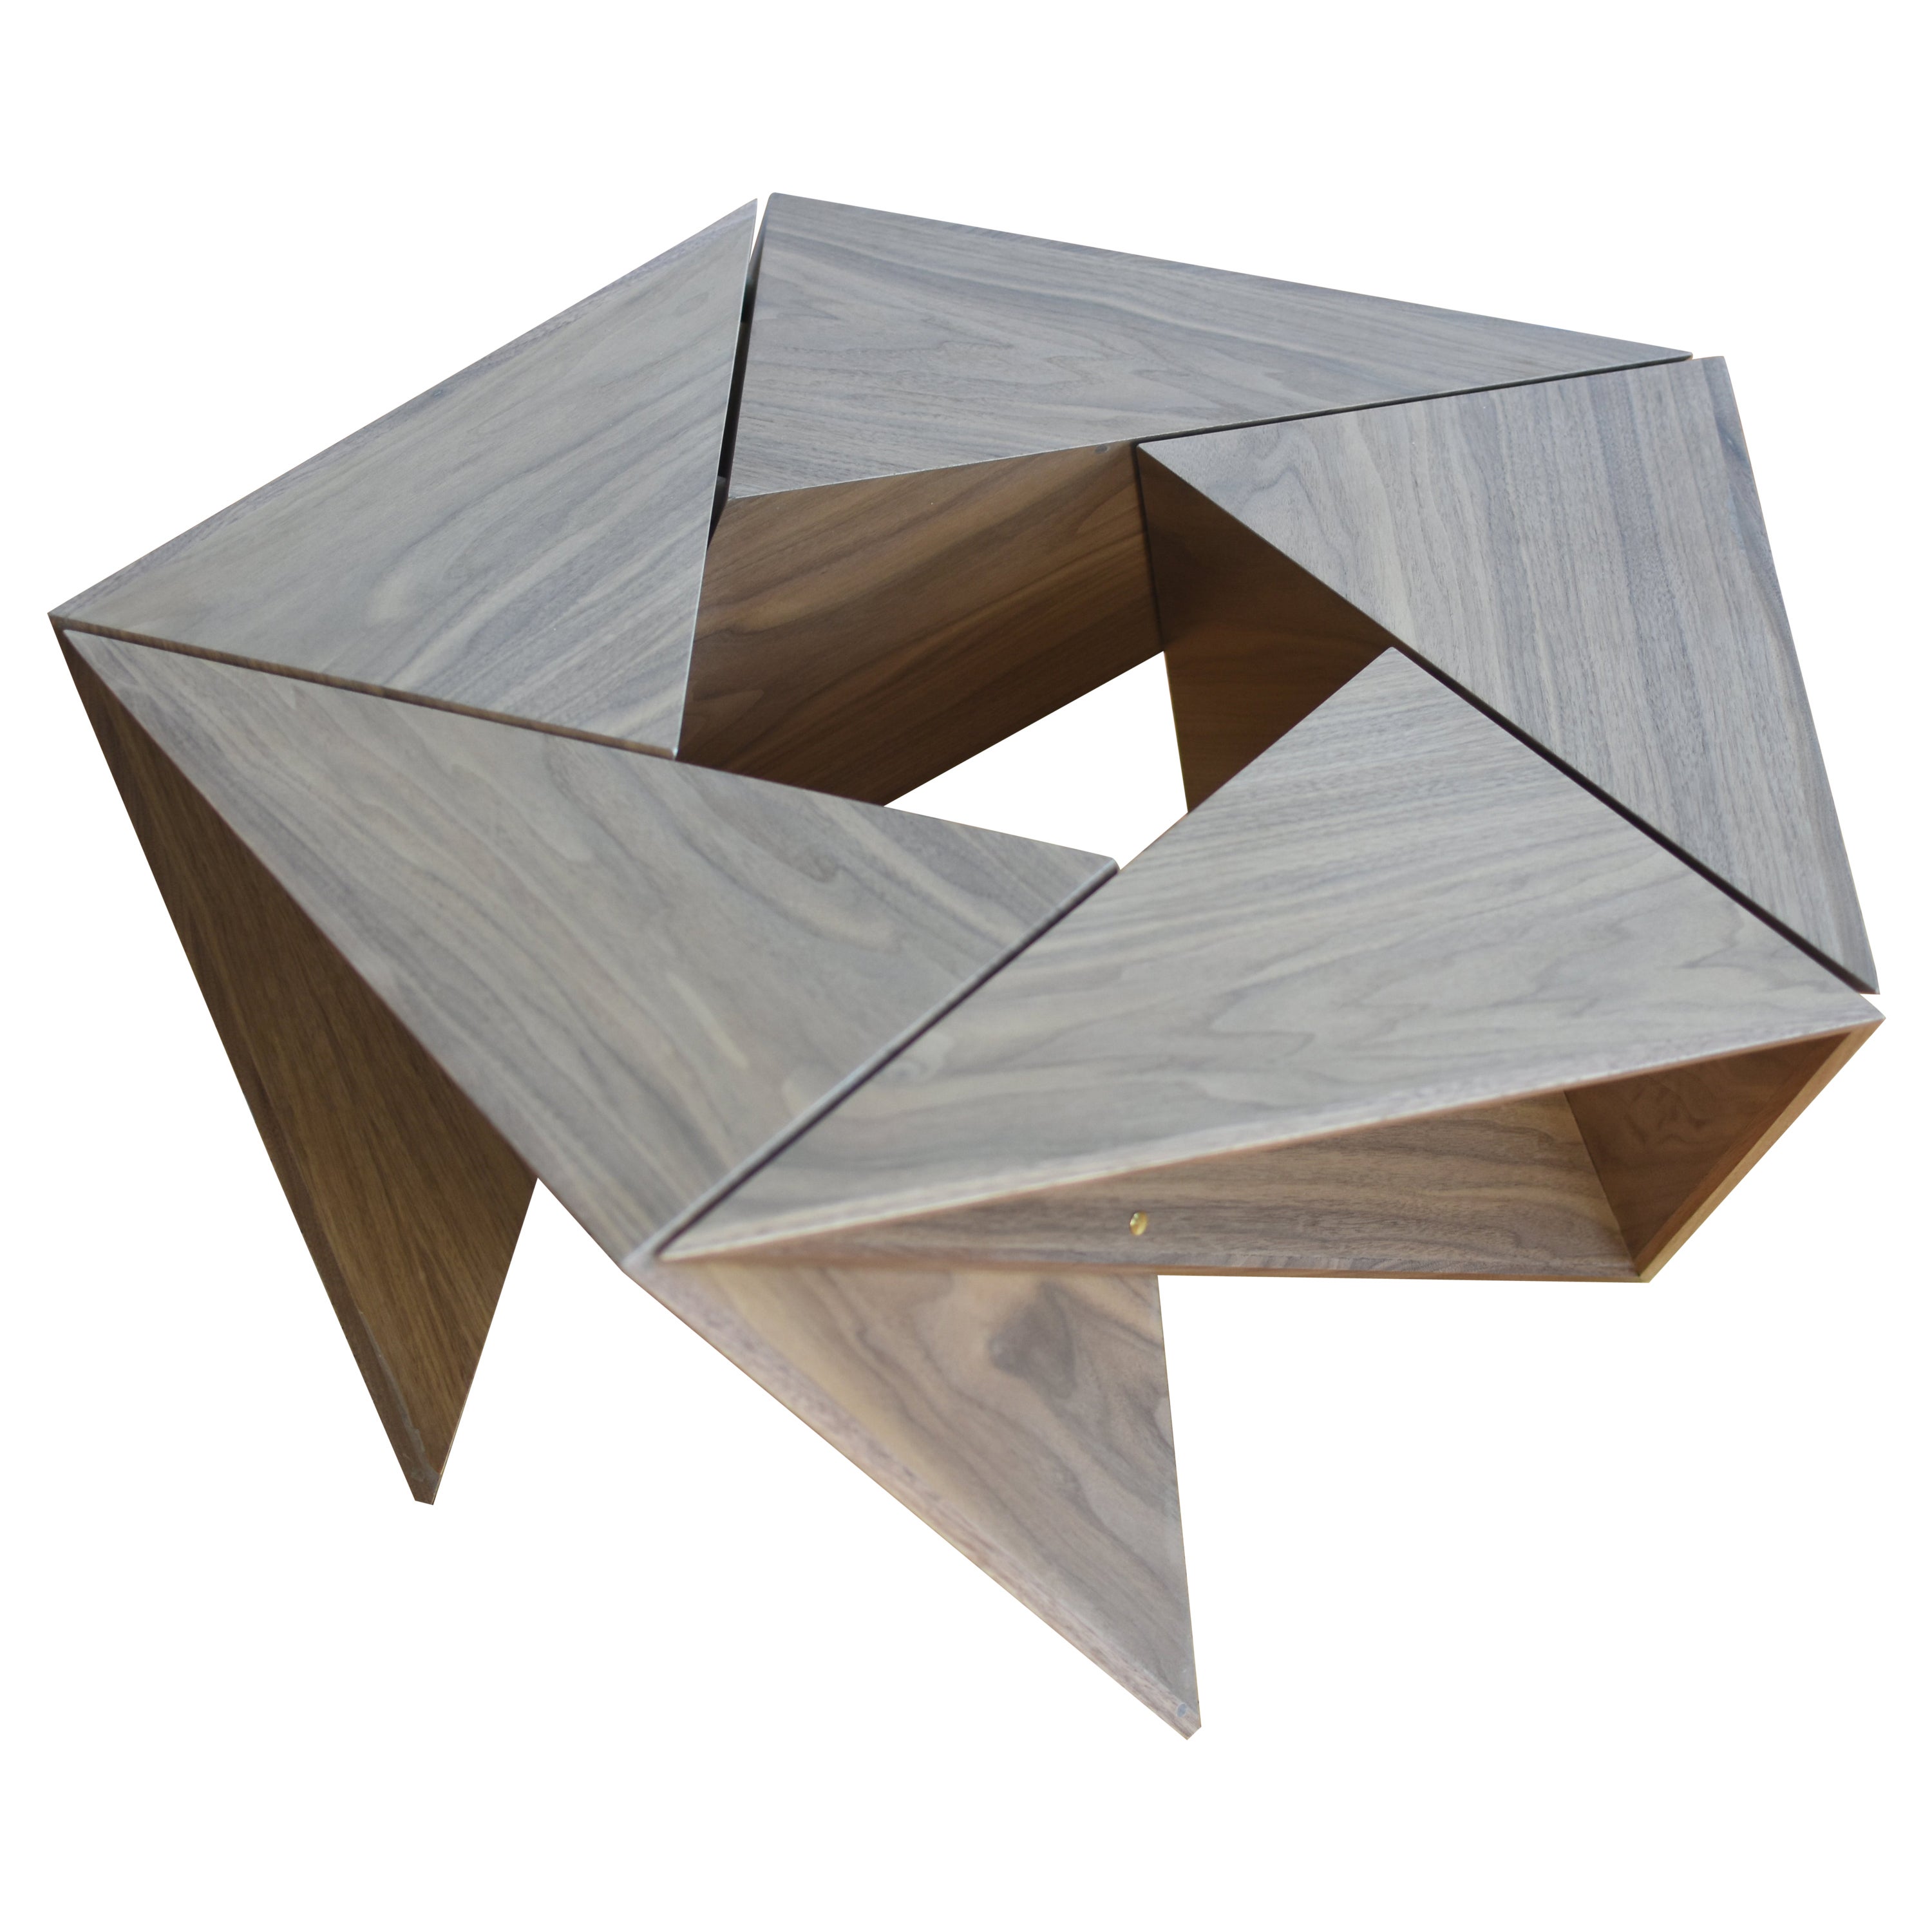 El Cangrejito, table basse modulaire pentagonal en noyer édition Louis Lim